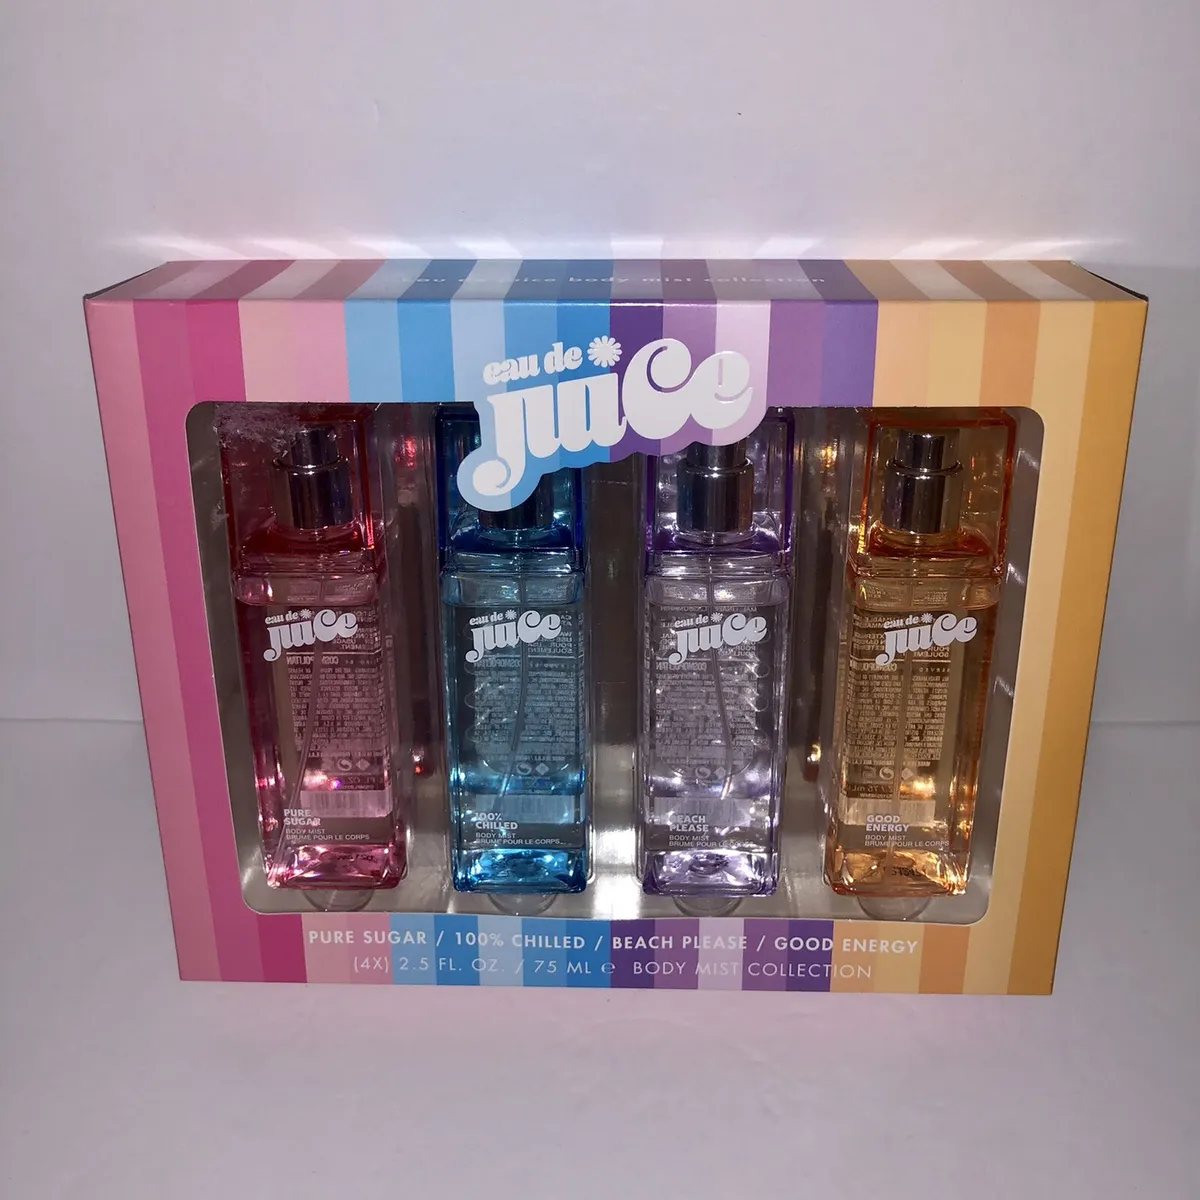 NEW Eau De Juice Body Mist Collection 4-pack Gift Set Pure Sugar Beach  Please+